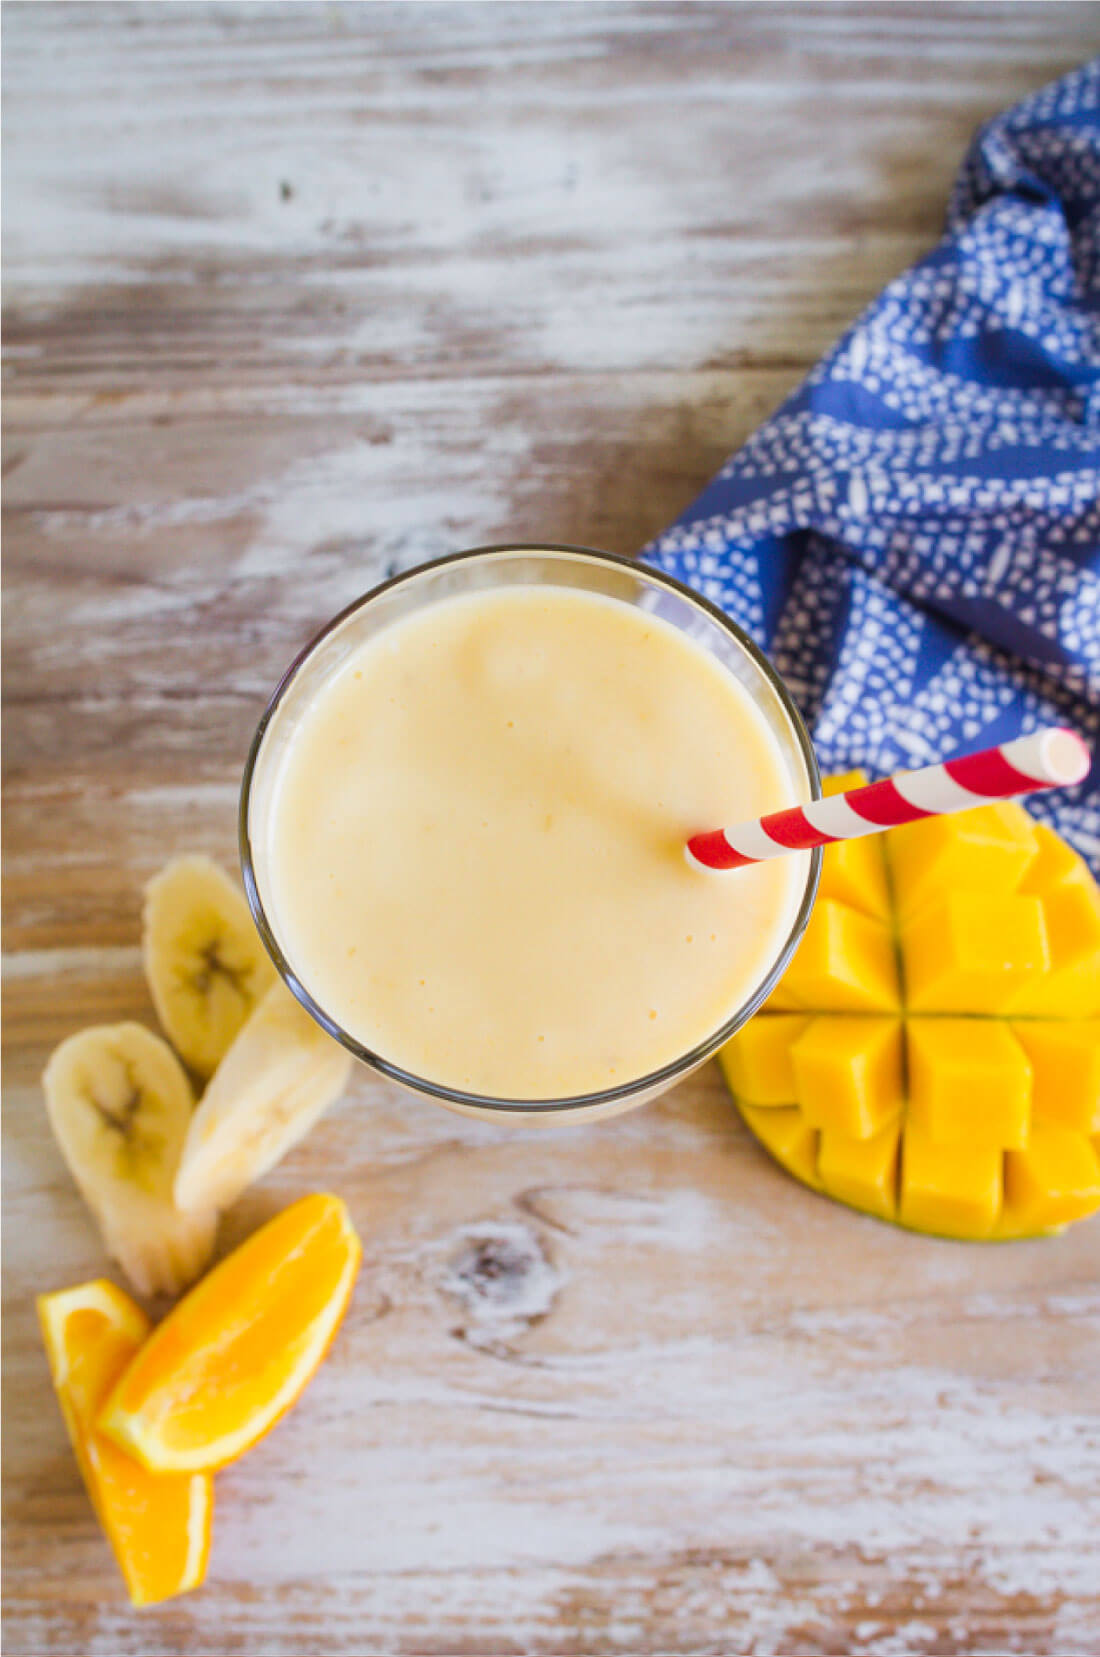 Super easy smoothie recipe to make - how to make a mango smoothie! from www.thirtyhandmadedays.com